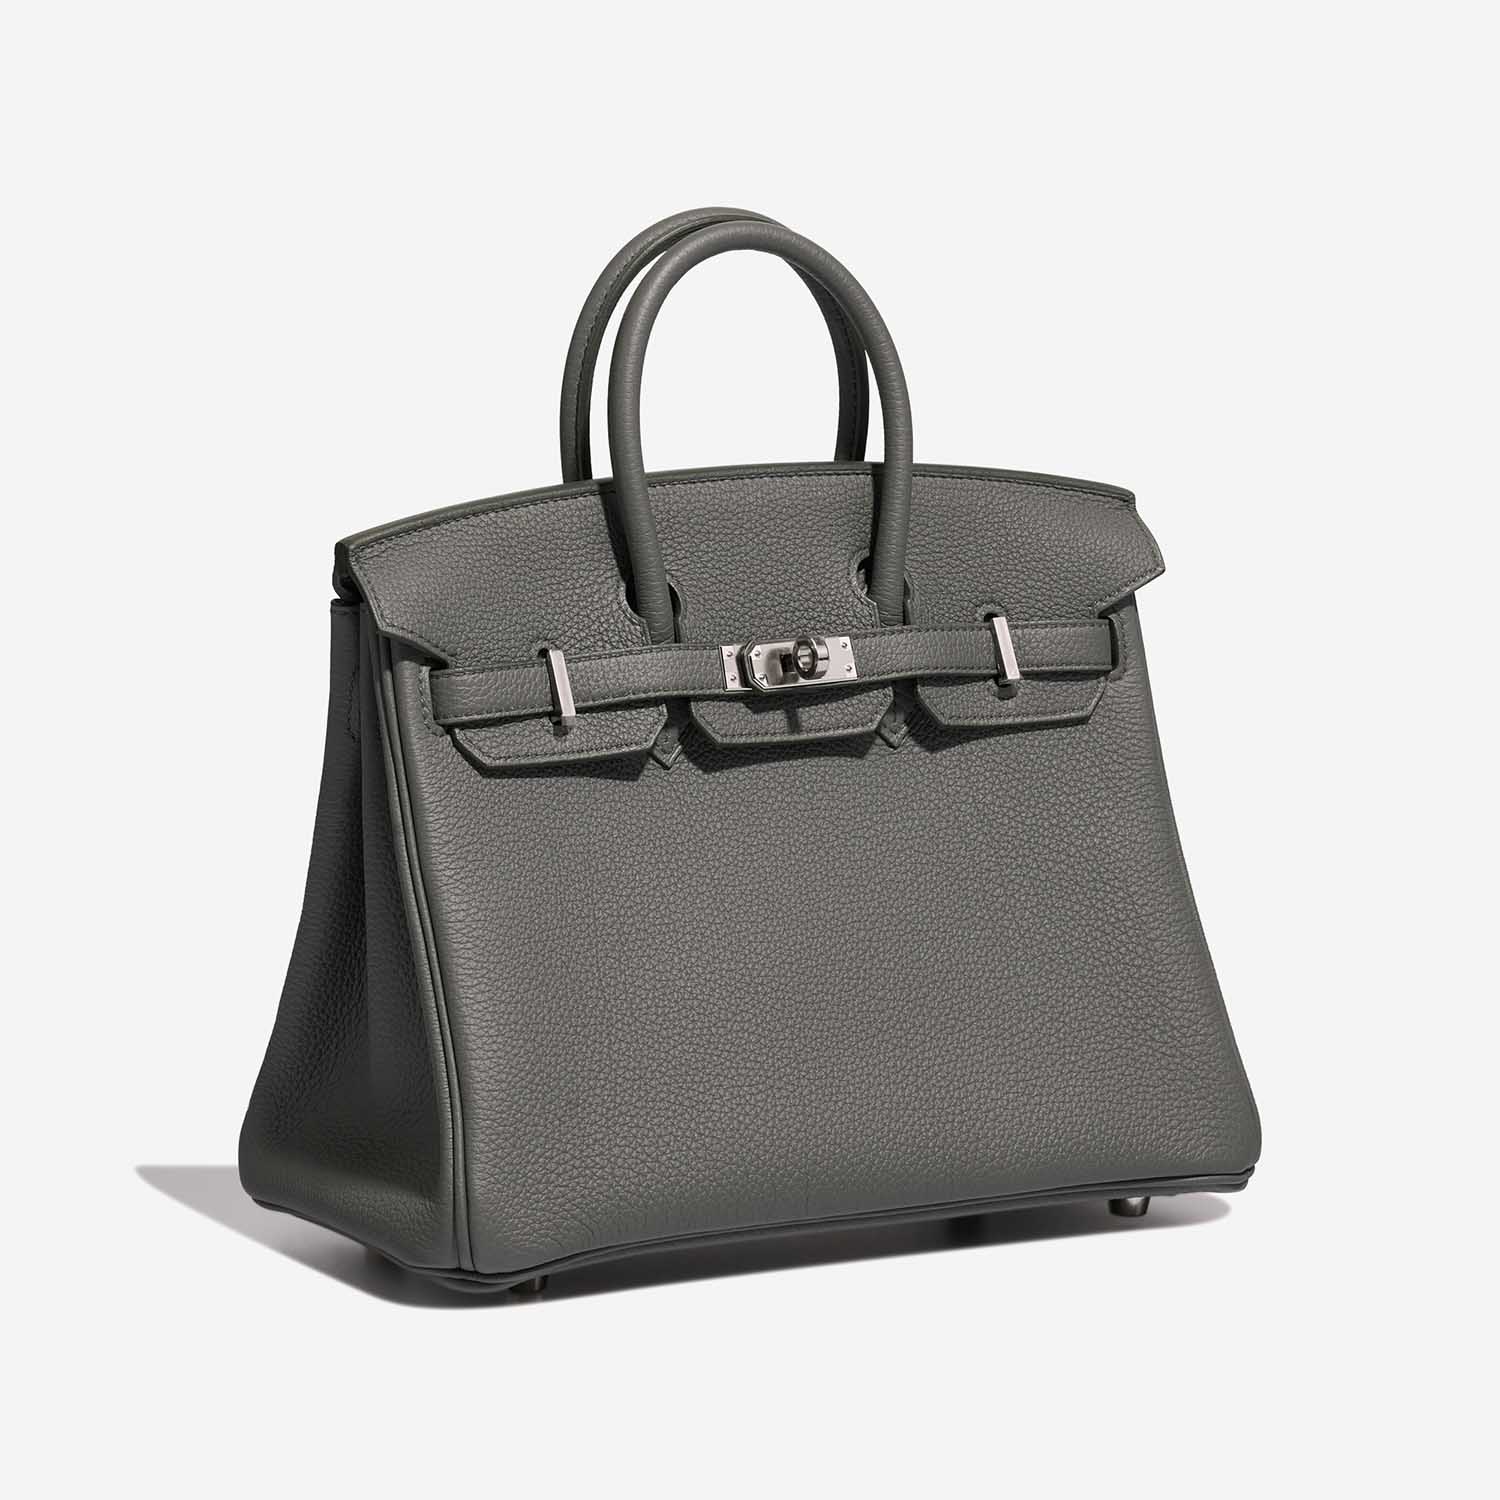 Hermès Birkin 25 VertAmande Side Front | Verkaufen Sie Ihre Designer-Tasche auf Saclab.com